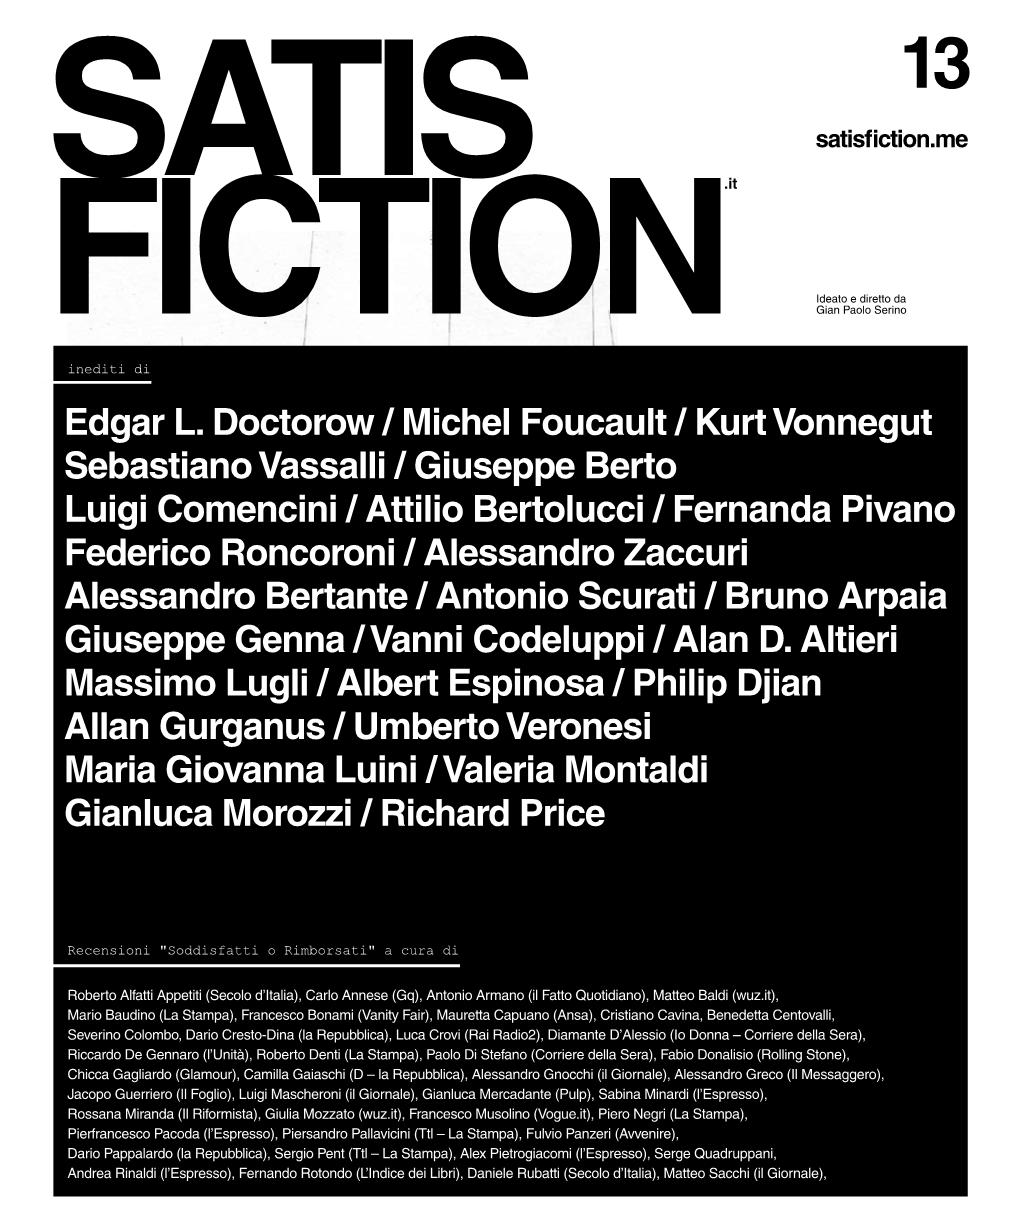 Edgar L. Doctorow / Michel Foucault / Kurt Vonnegut